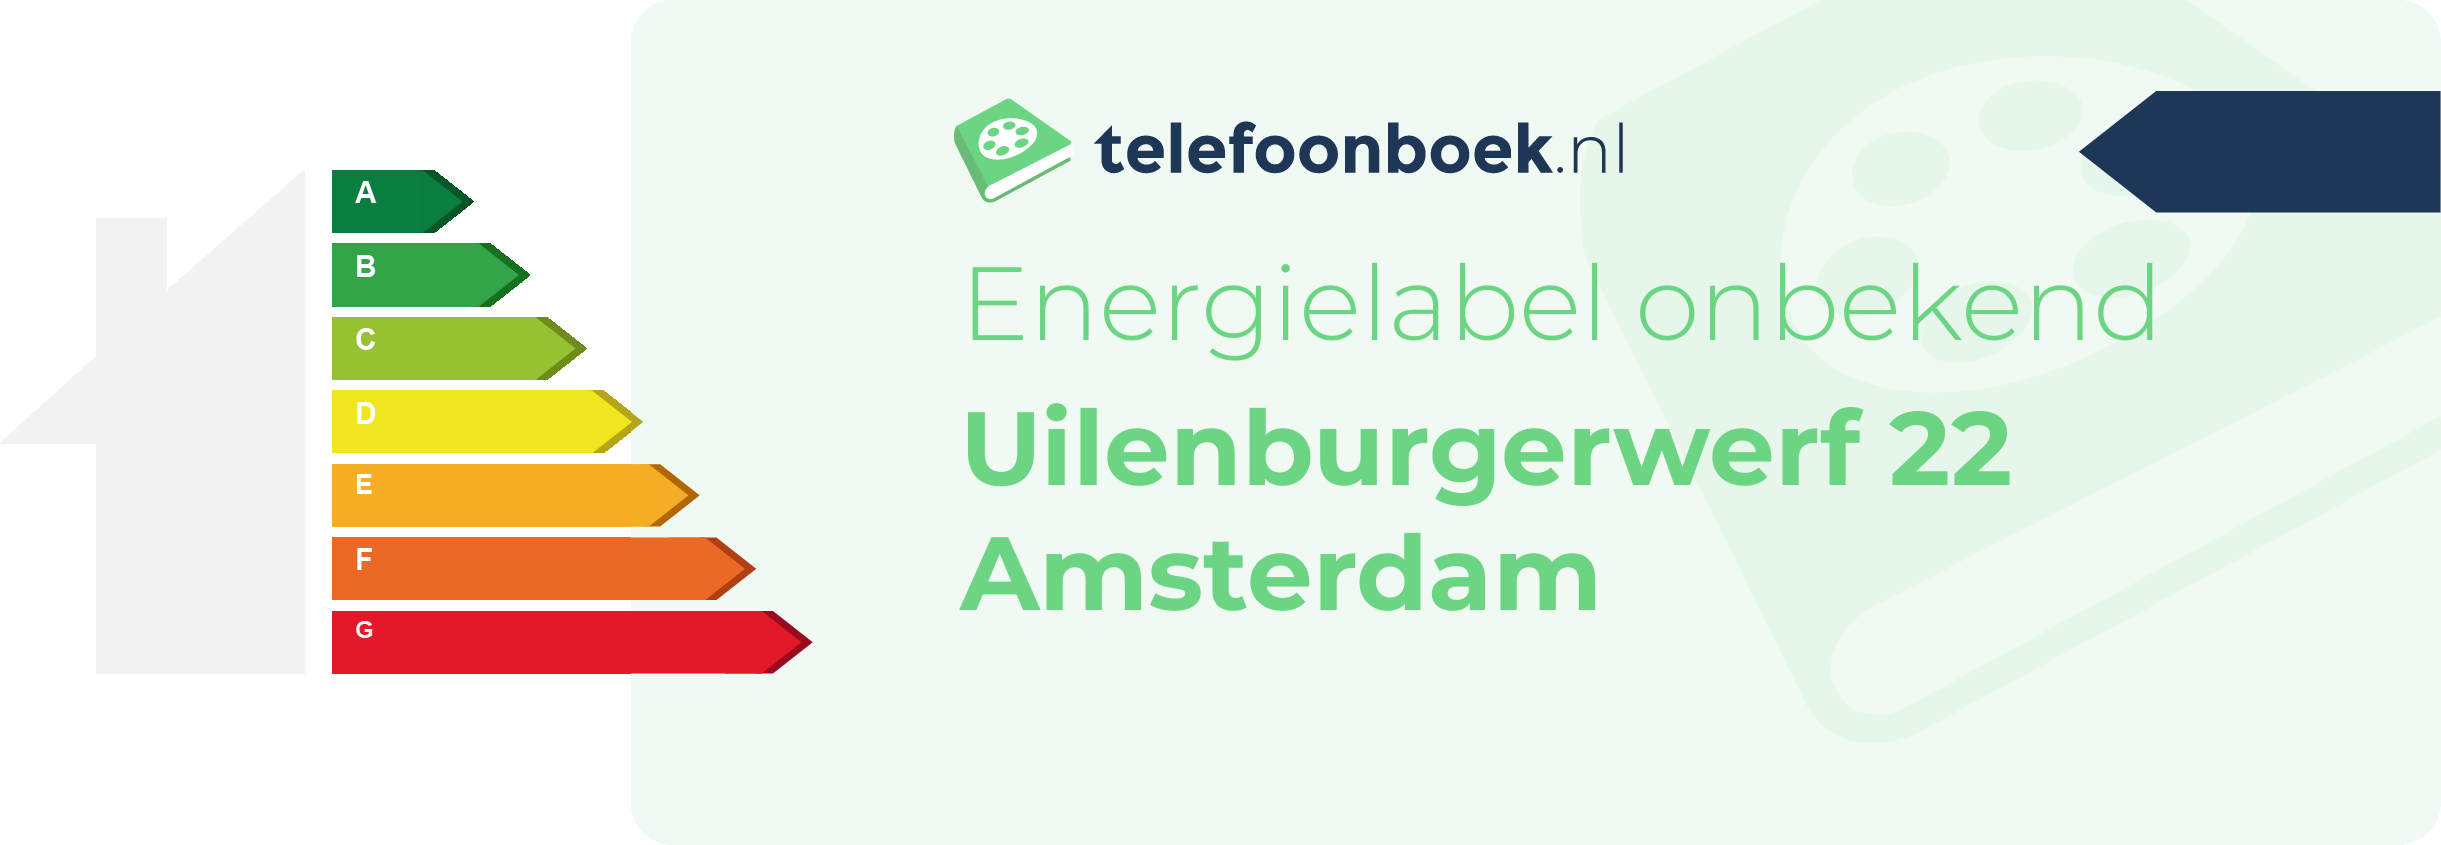 Energielabel Uilenburgerwerf 22 Amsterdam